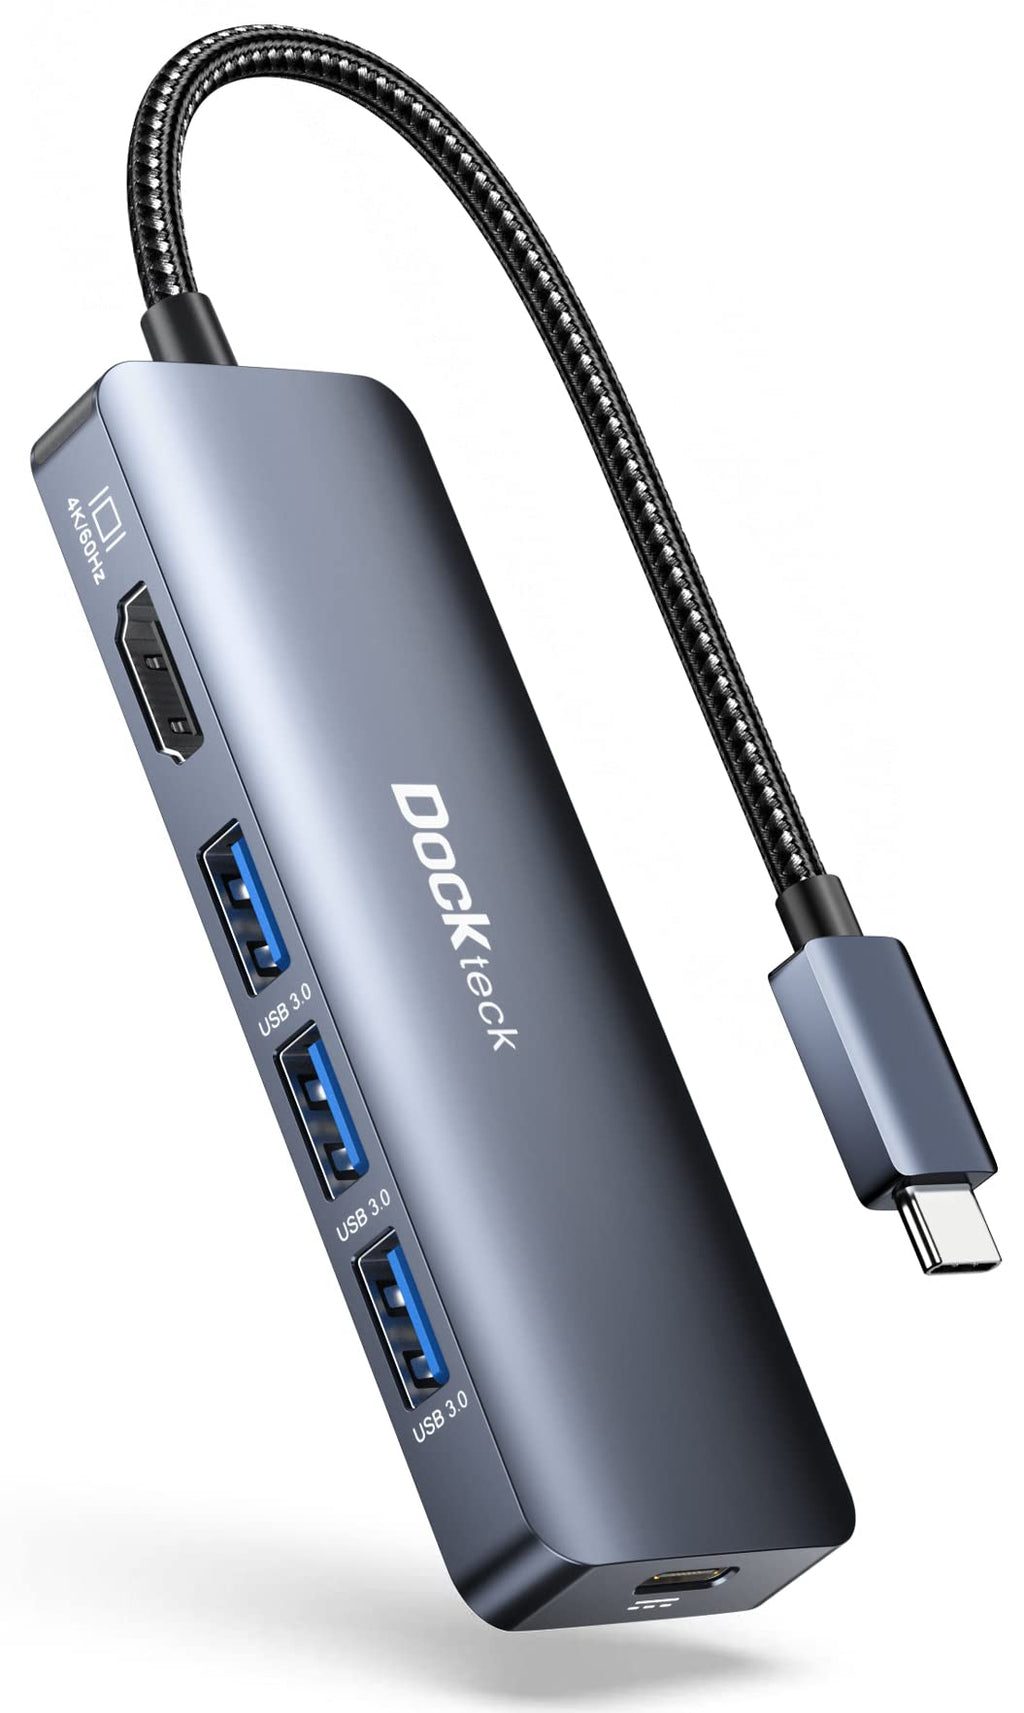  [AUSTRALIA] - USB C HUB HDMI 4K 60Hz, 5 in 1 USB-C Hub Multiport Adapter, Dockteck Macbook Hub Adapter Dongle with 100W PD, 4K USB C to HDMI, 3xUSB 3.0 for Macbook Pro/Air M1, iPad Pro/Air/Mini 6, Surface Pro 7/8/X